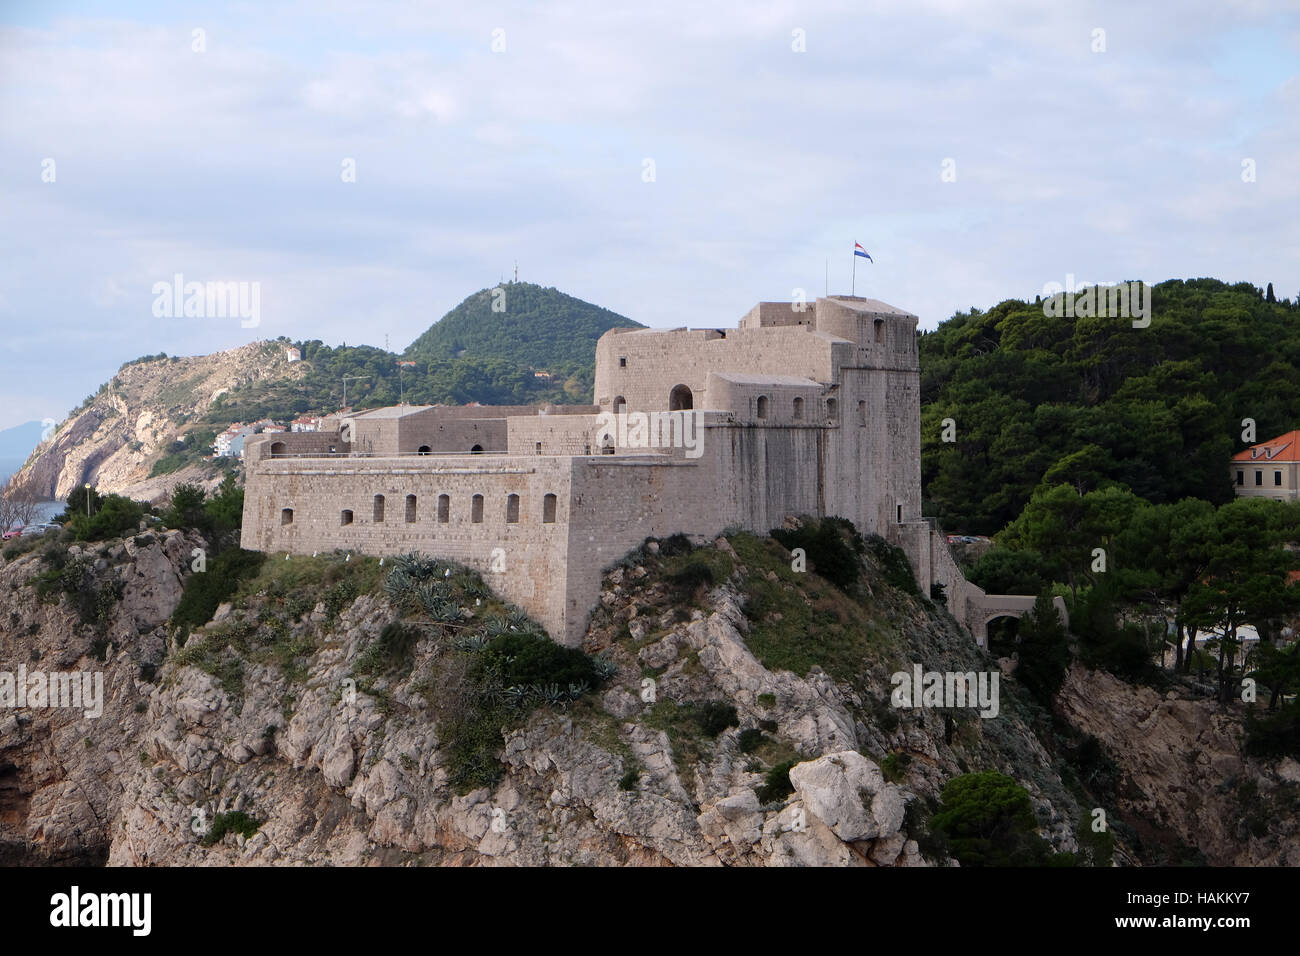 Fort Lovrijenac or St. Lawrence Fortress in Dubrovnik, Croatia on November 30, 2015. Stock Photo